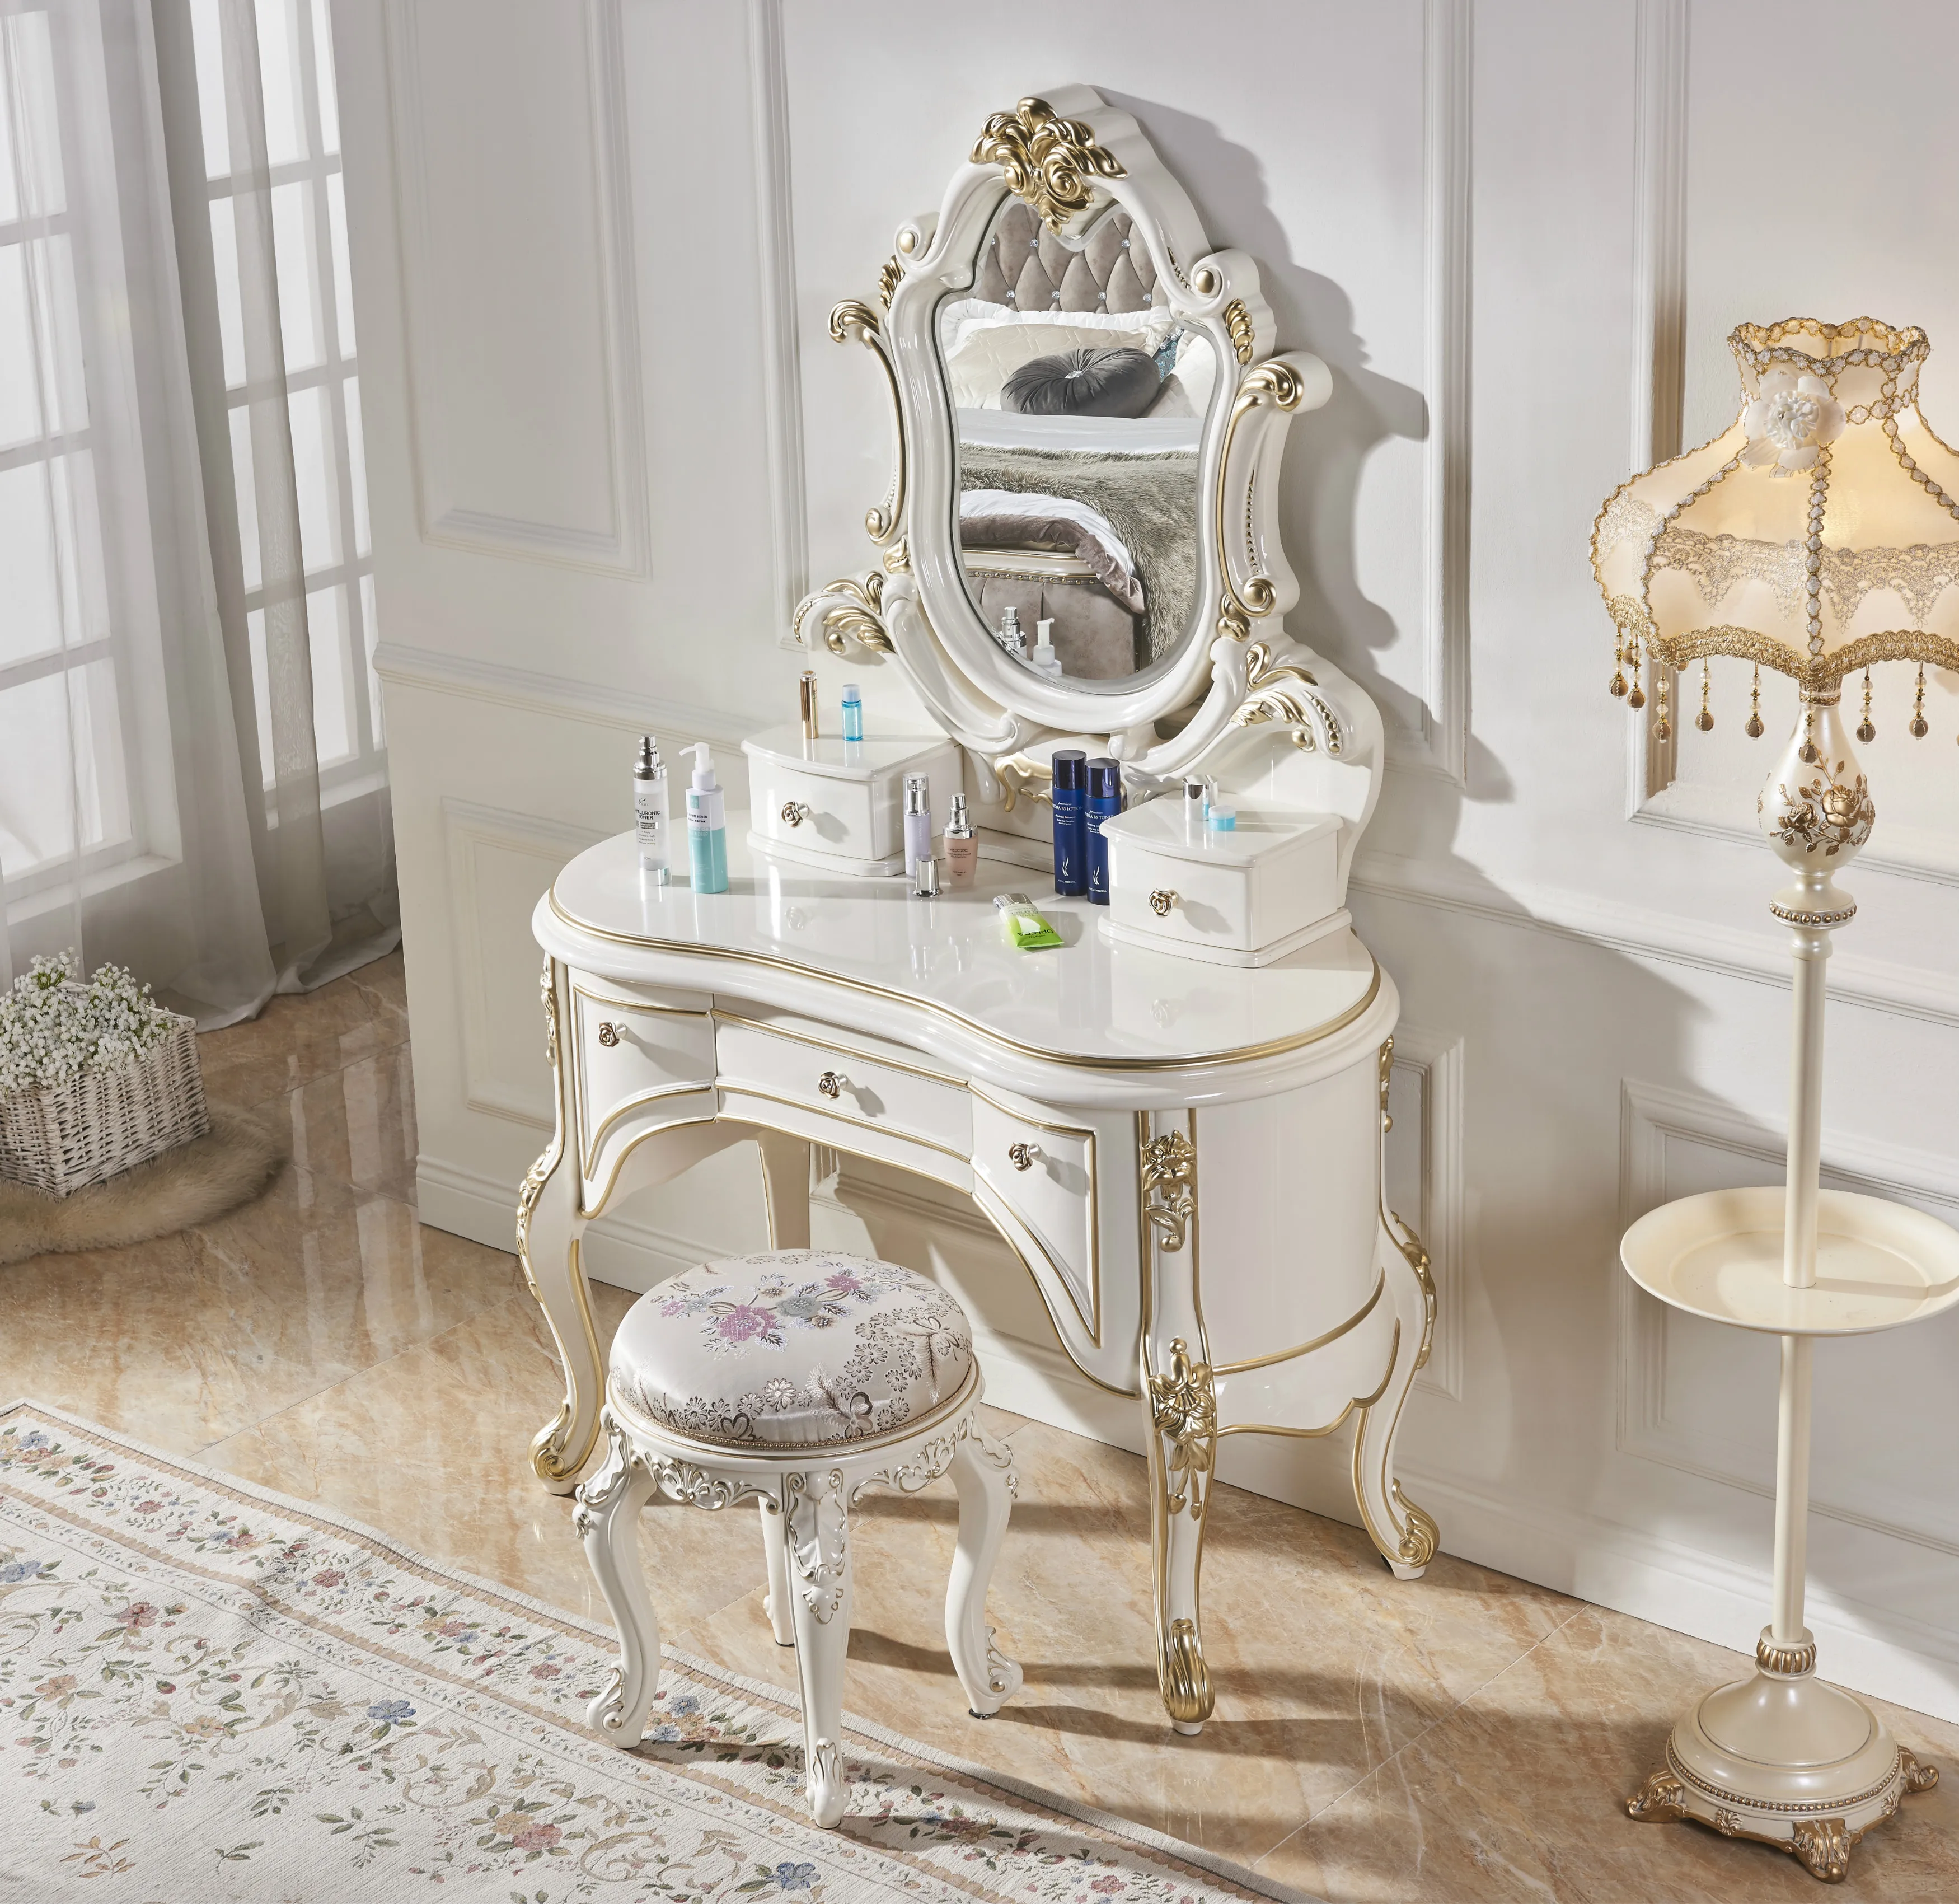 Луи Мода комоды Роскошный мини принцесса макияж скамейка белая твердая древесина макияж стол маленькая мебель для семьи